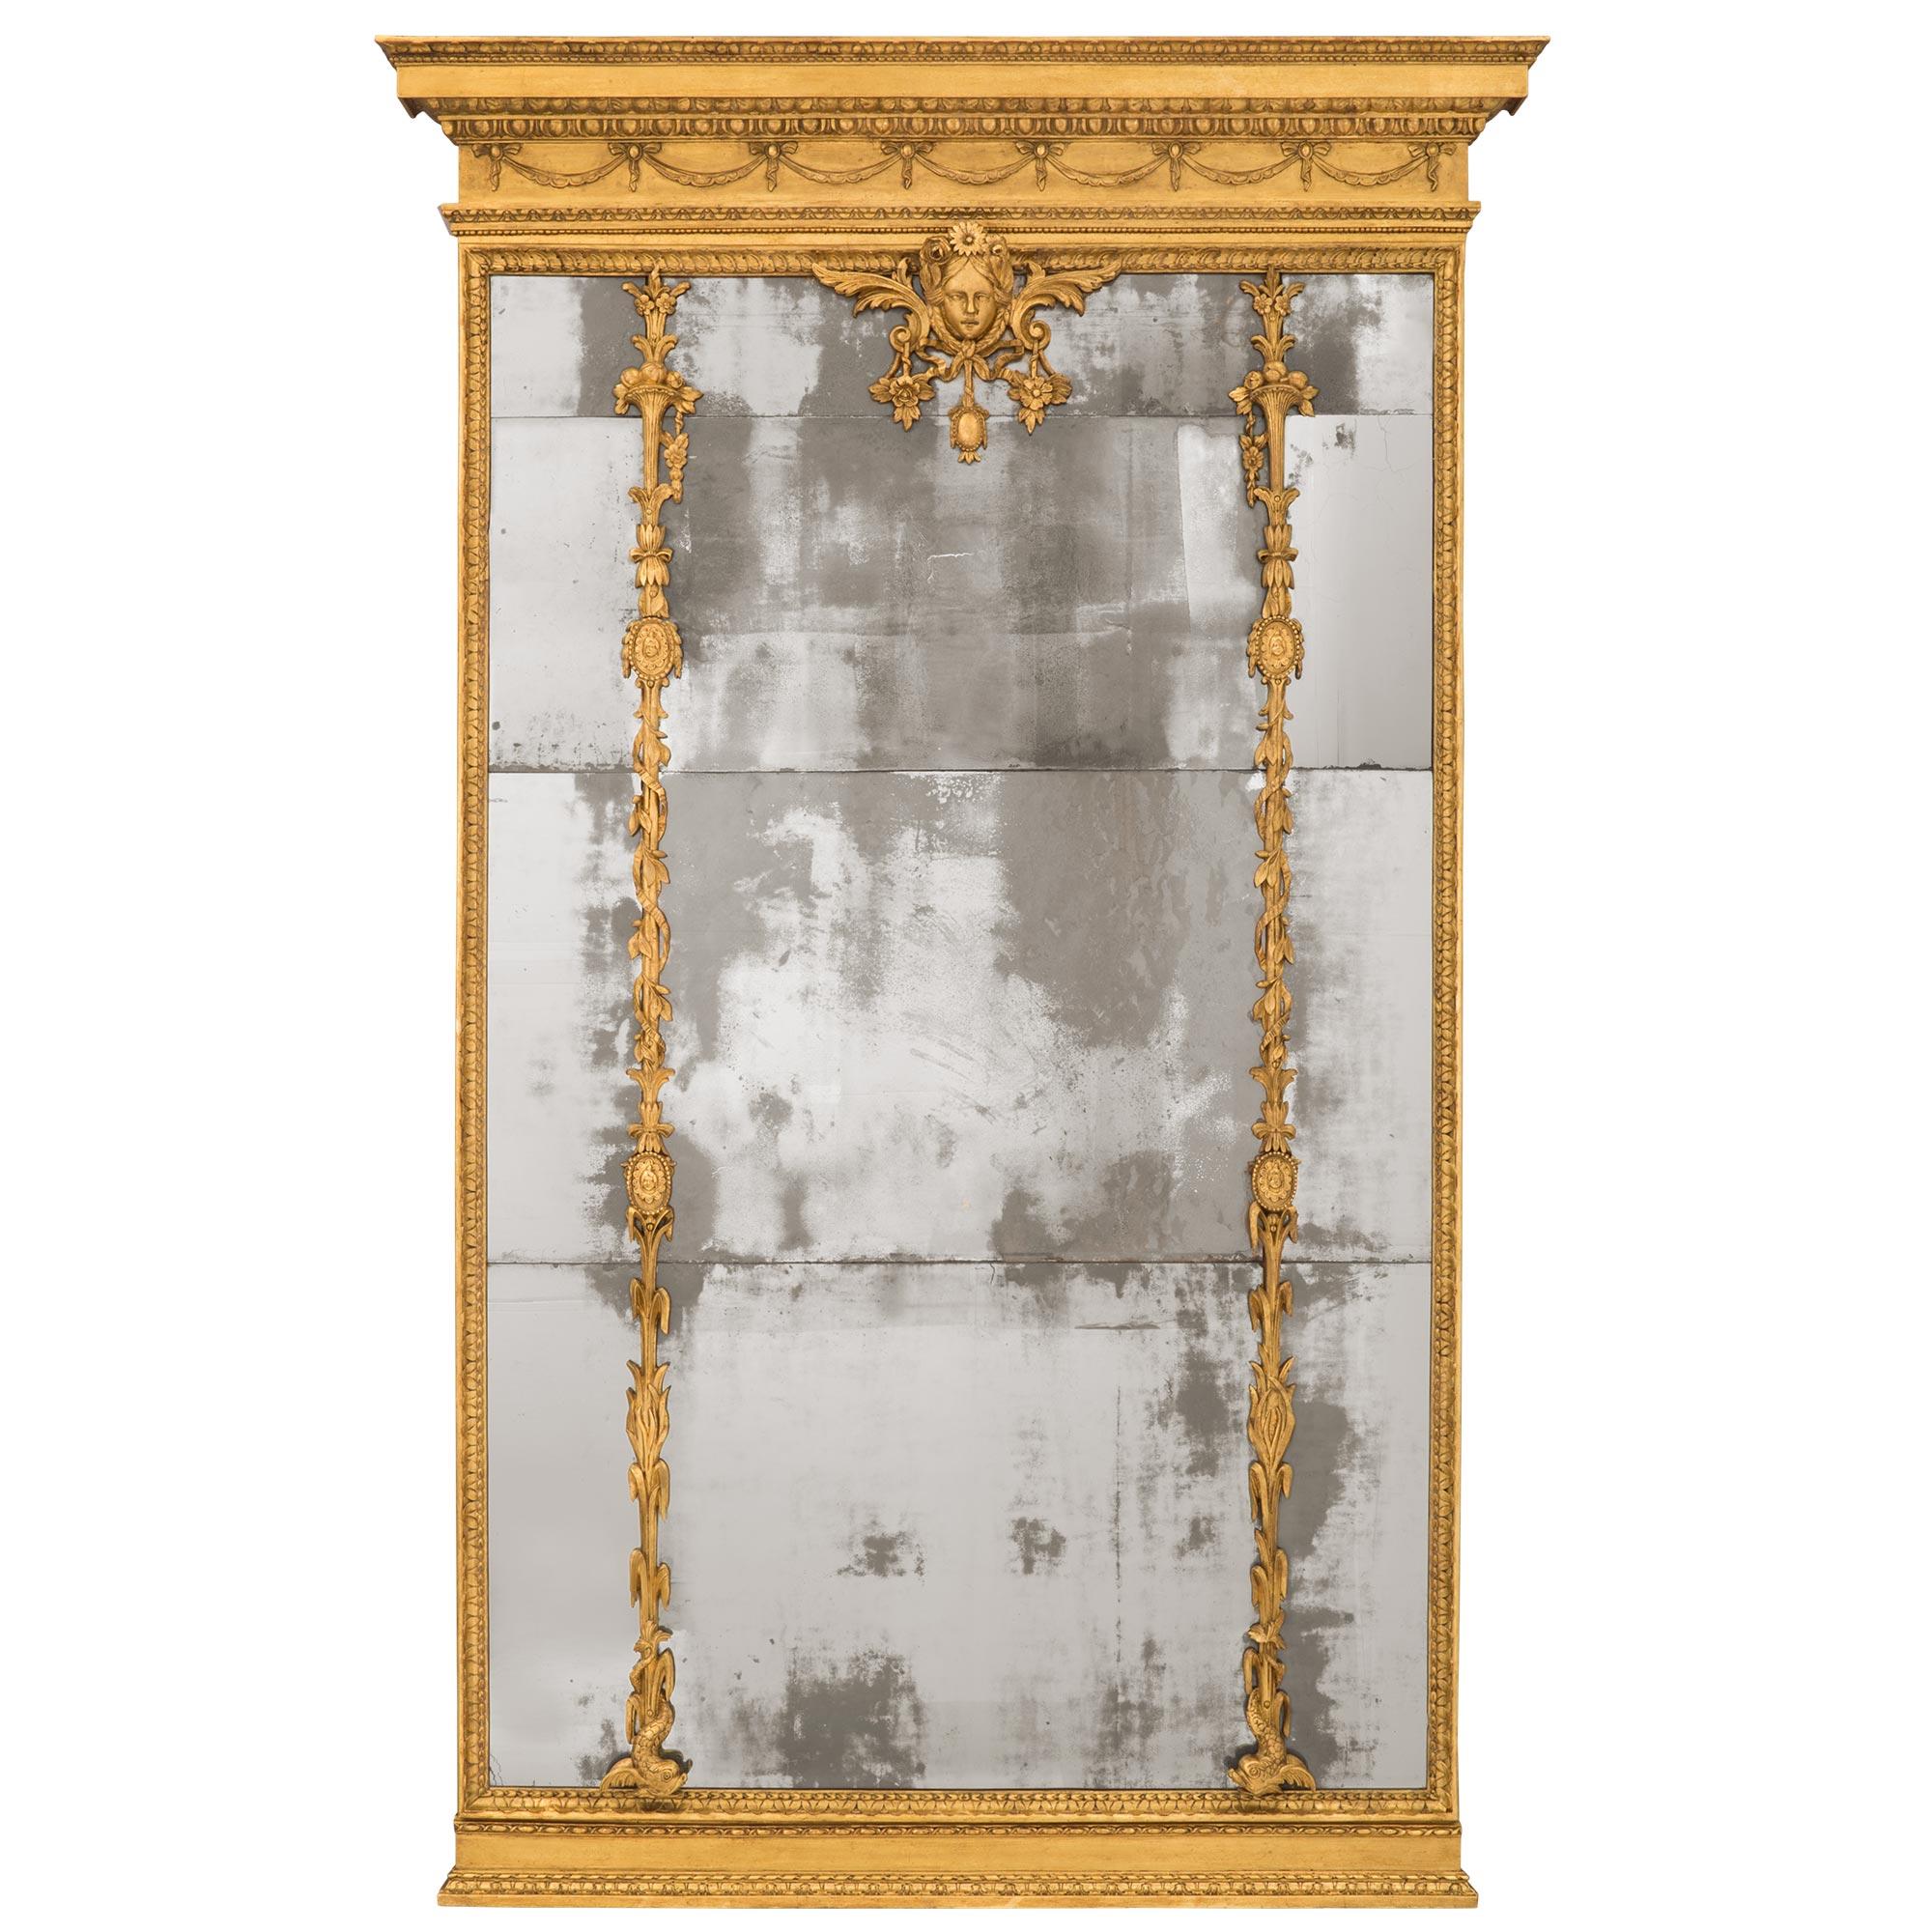 Miroir en bois doré italien du XVIIIe siècle, de taille monumentale, d'époque Louis XVI. Le miroir a conservé toutes ses plaques de miroir d'origine dans une belle bordure de feuillage marbré. La base présente également un fin motif moucheté avec